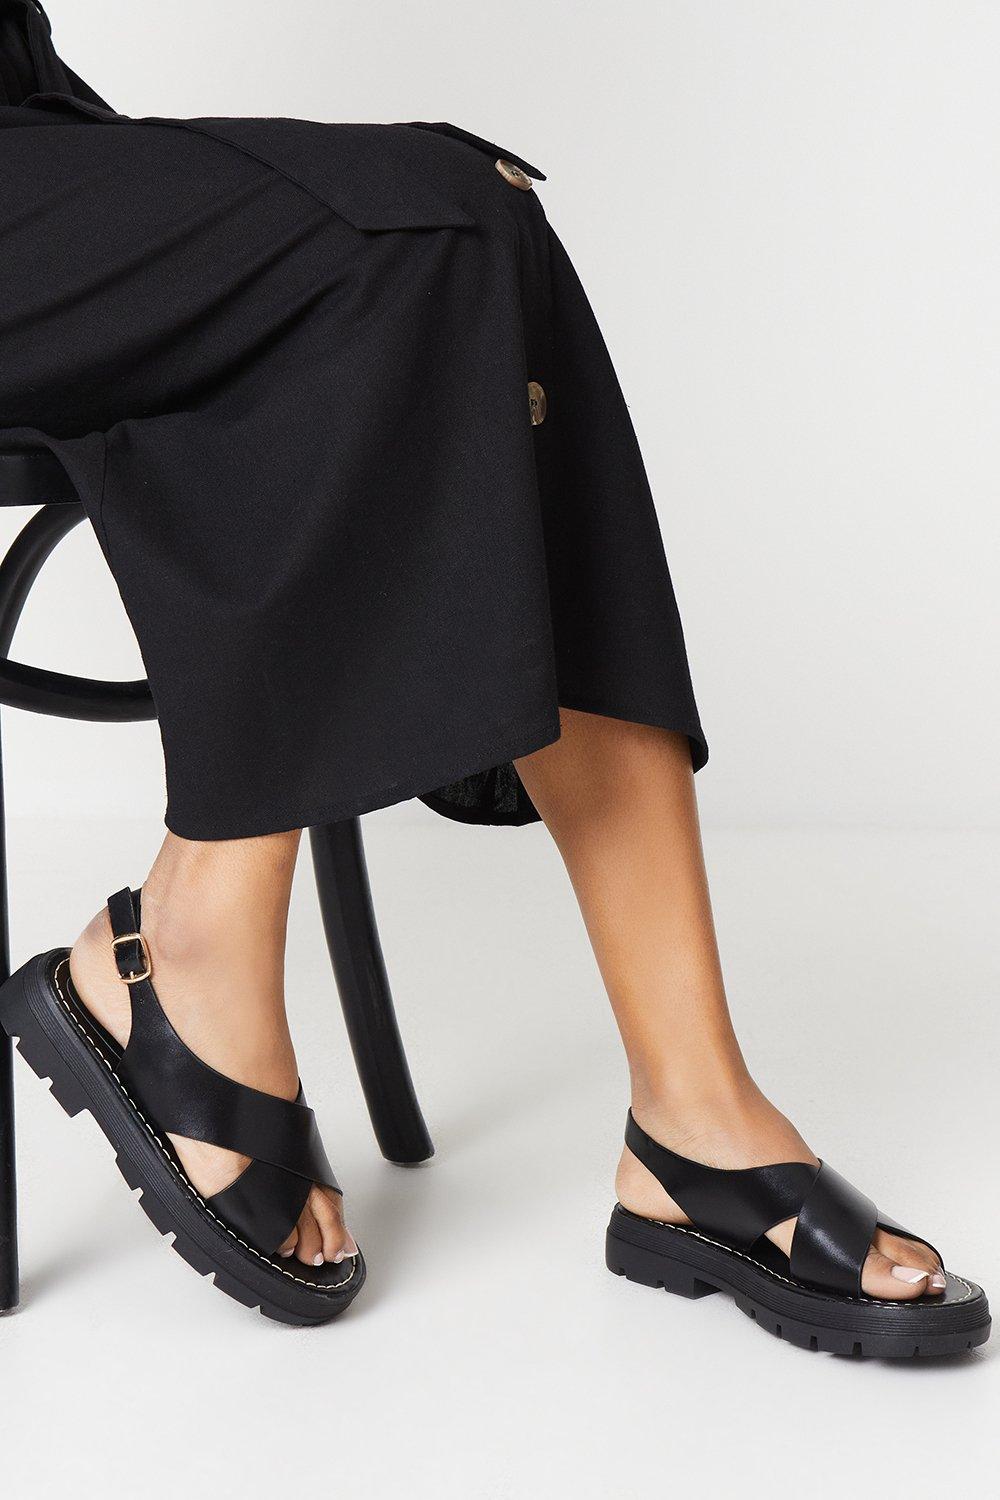 Womens Faith: Maxine Cross Strap Chunky Cleated Sandals